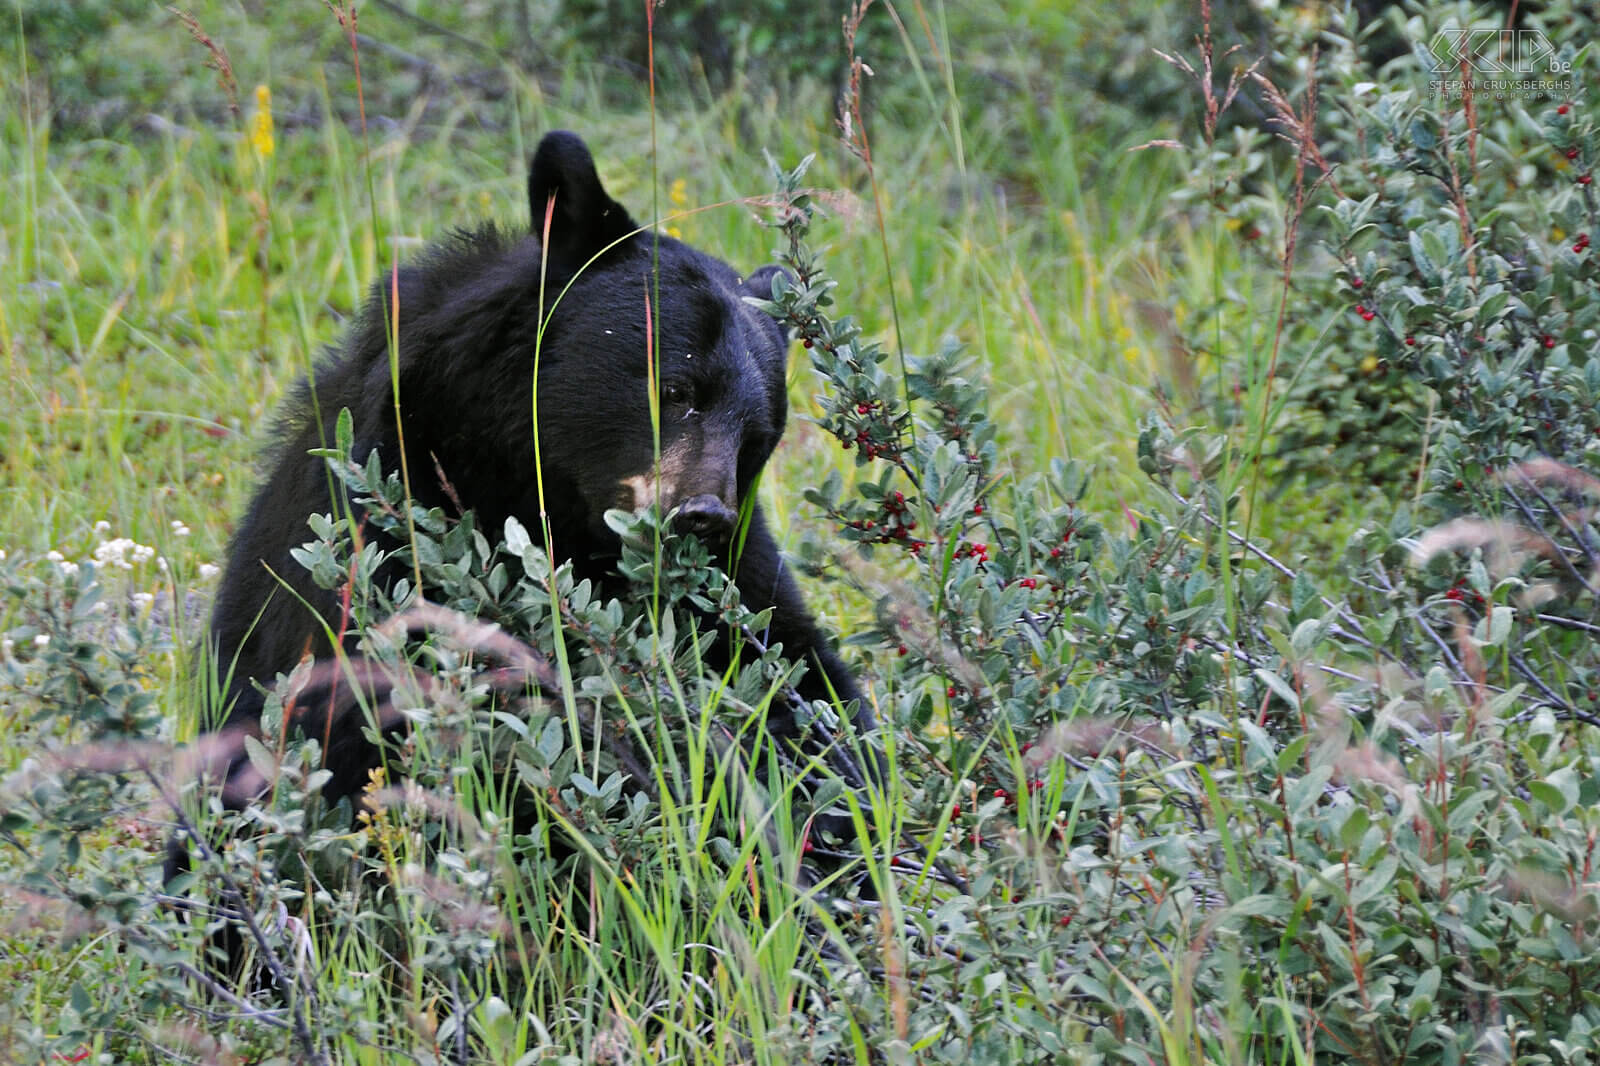 Jasper NP - Zwarte beer Een zwarte beer (Ursus americanus) die 's ochtends onverstoorbaar bessen aan het eten is langs de weg. Stefan Cruysberghs